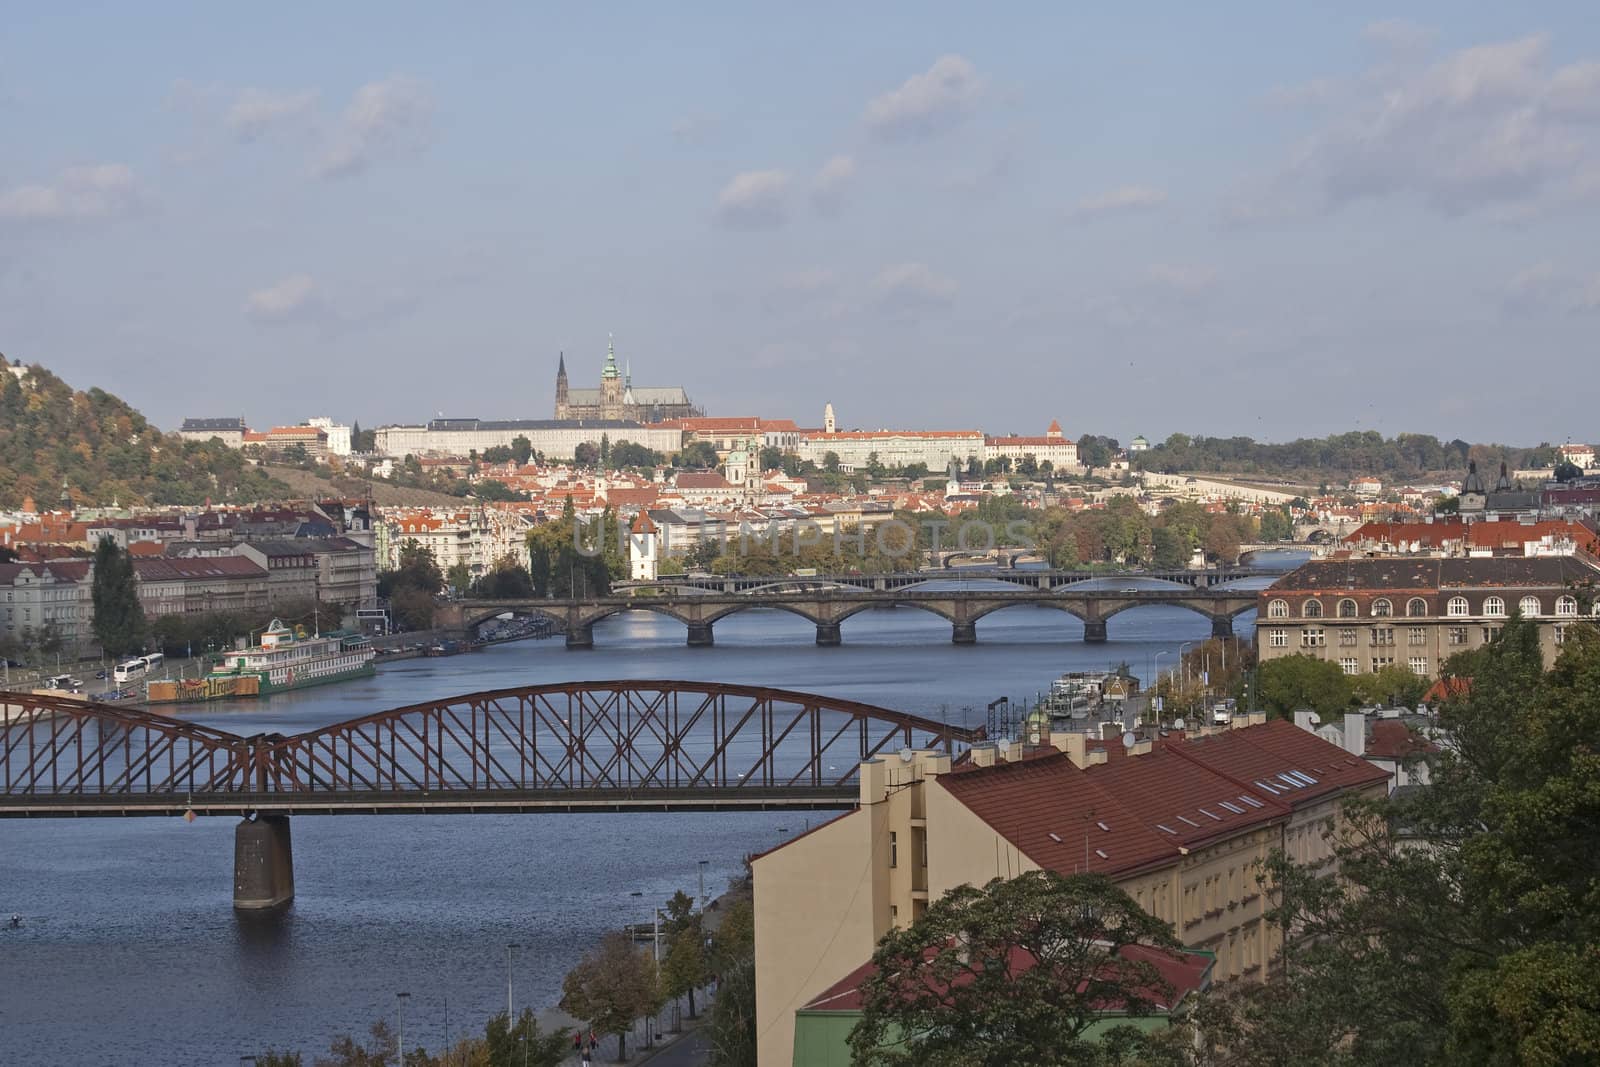 Prague, Vltava river, bridges by tmirlin